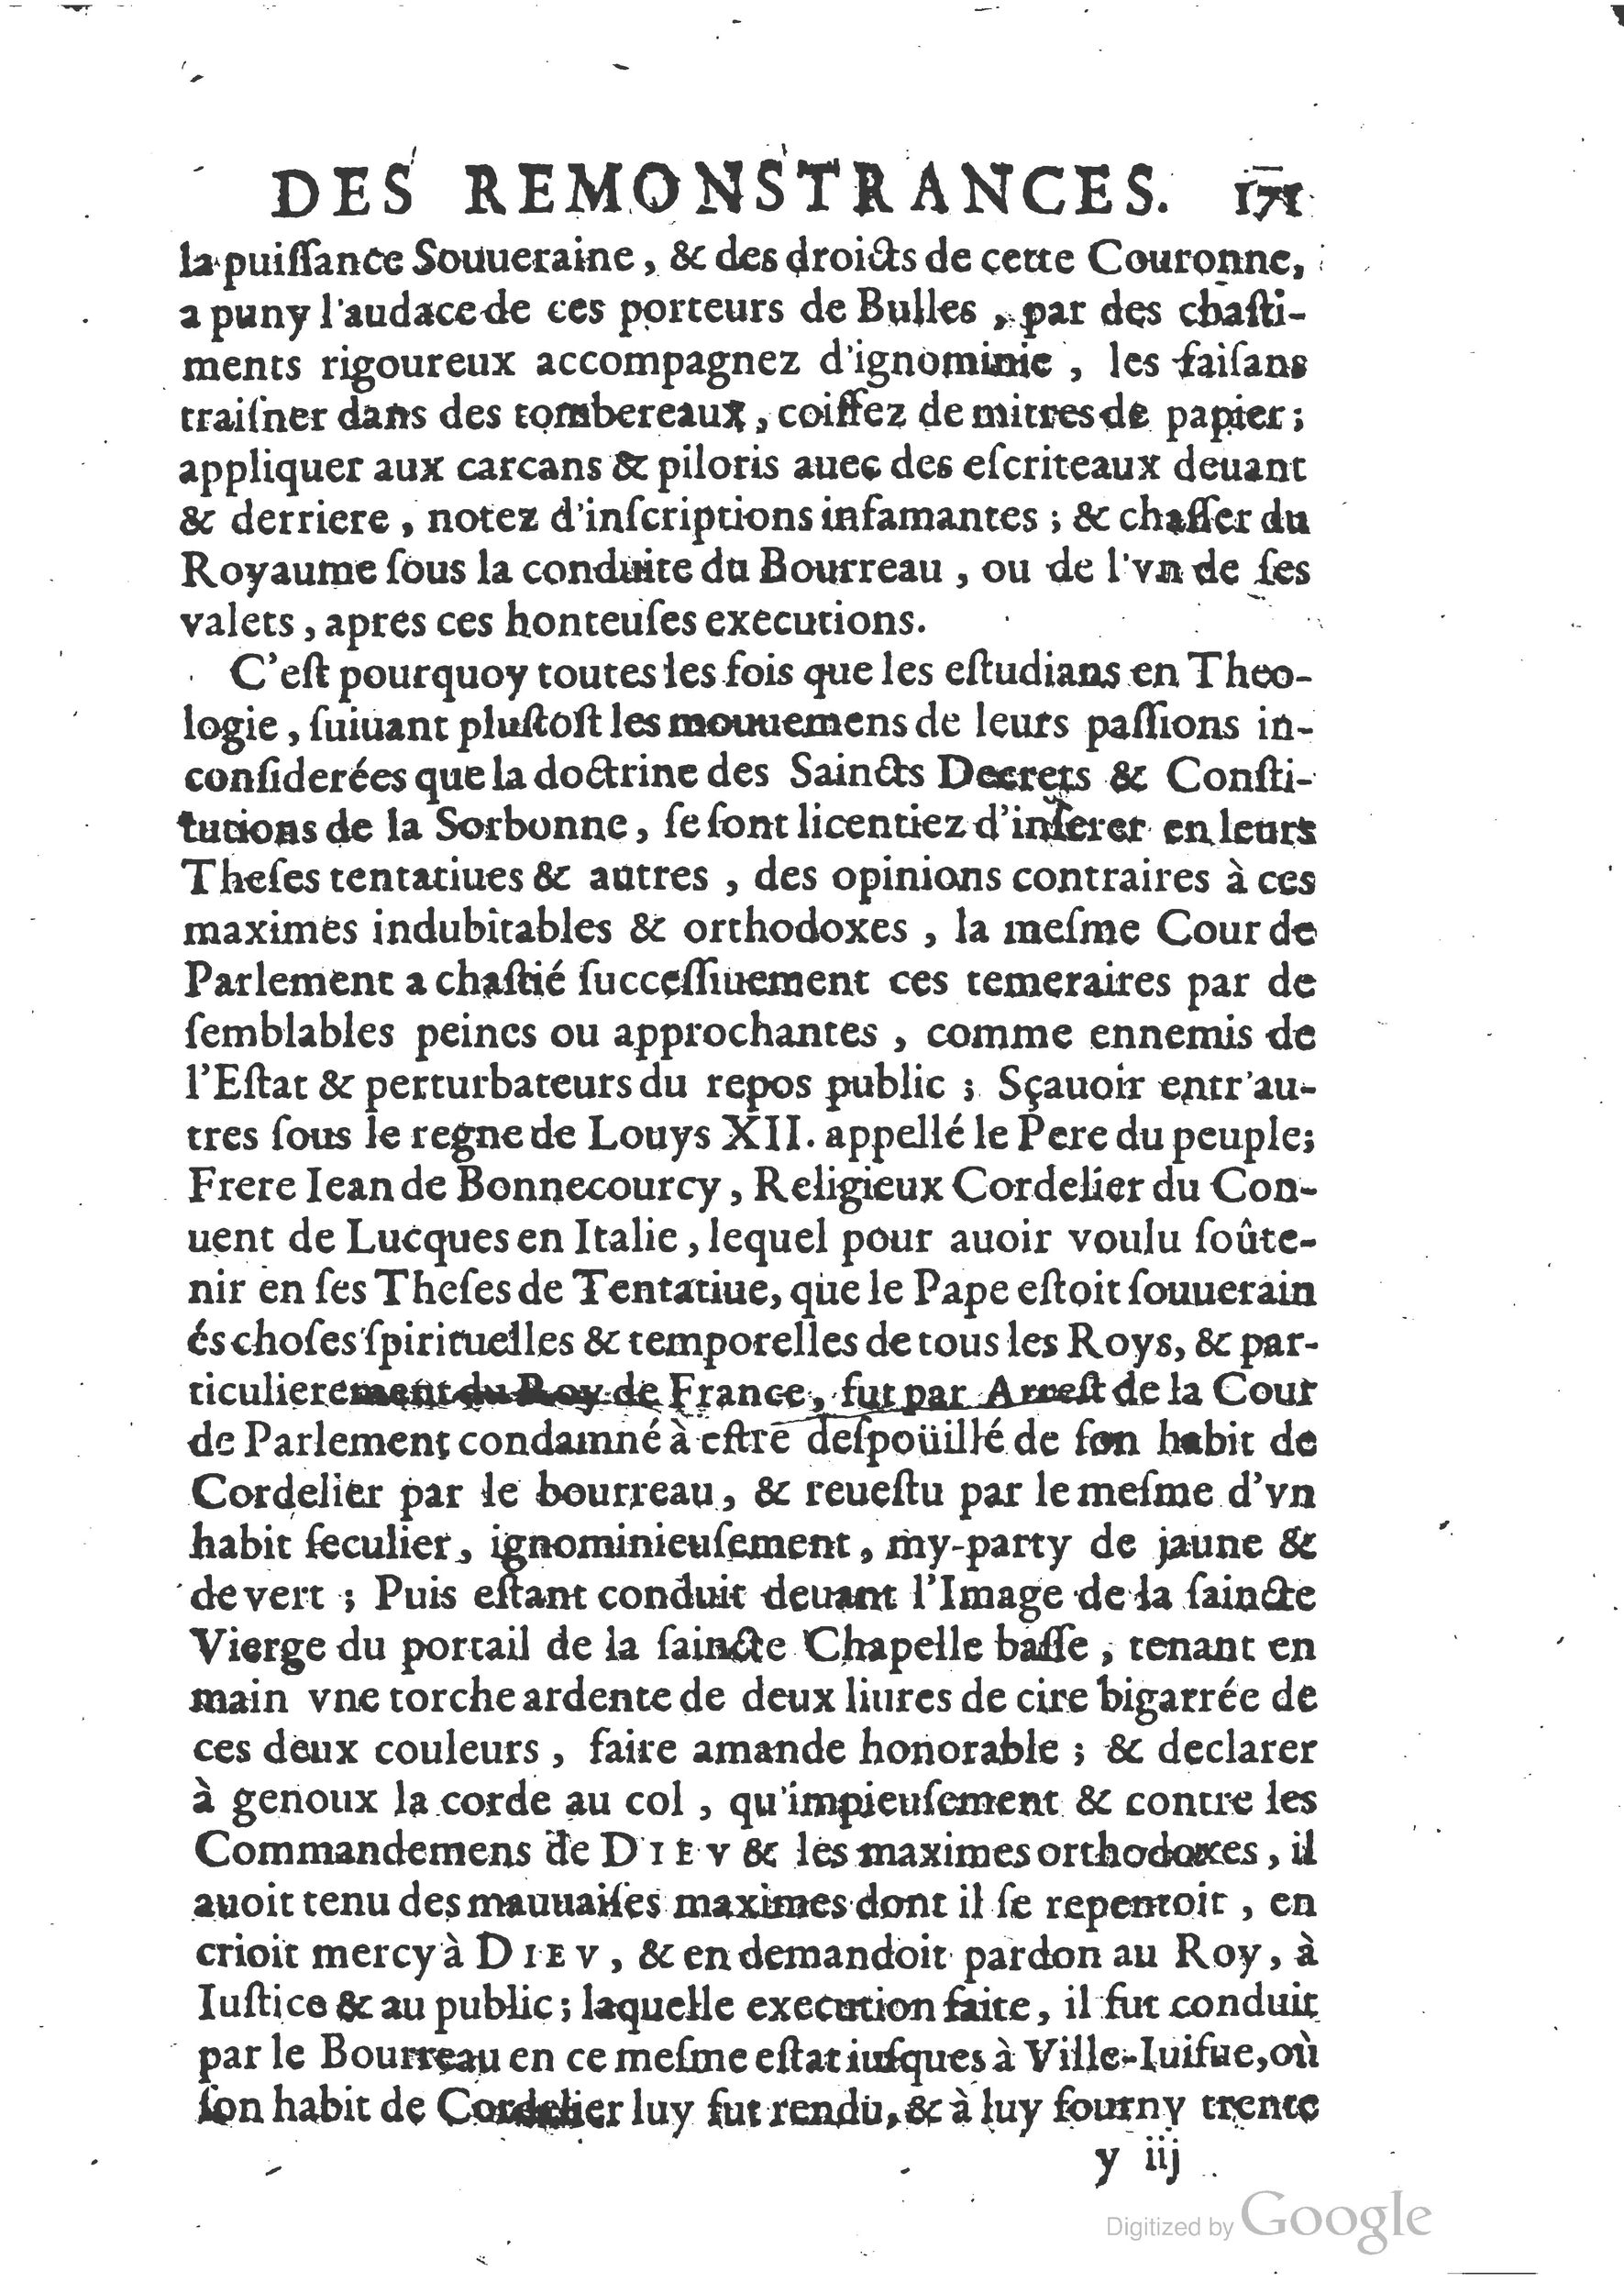 1654 Trésor des harangues, remontrances et oraisons funèbres Robin_BM Lyon_Page_410.jpg